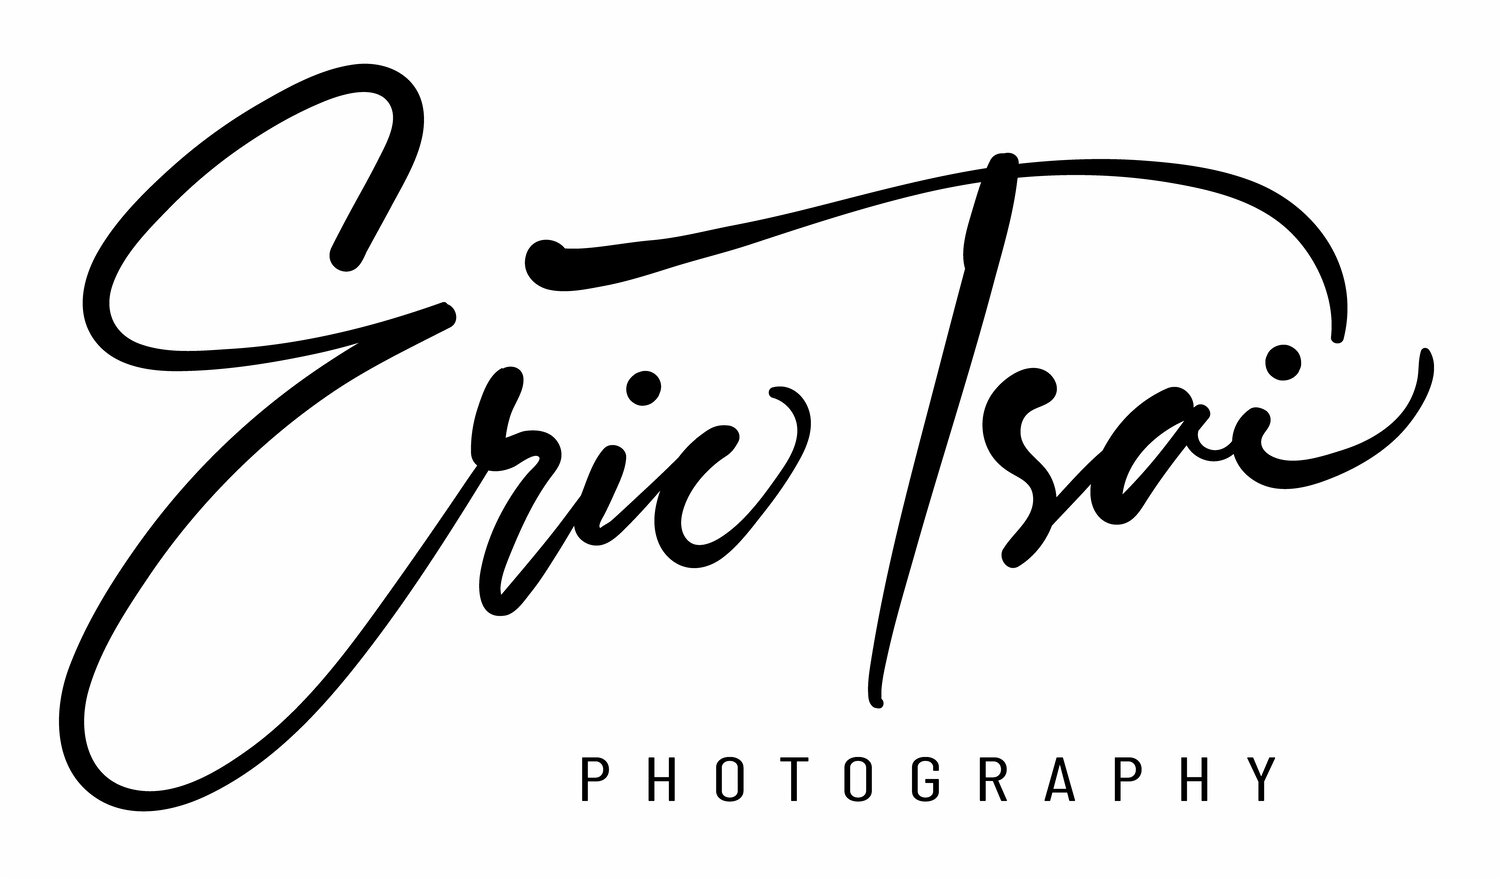 Eric Tsai Photography